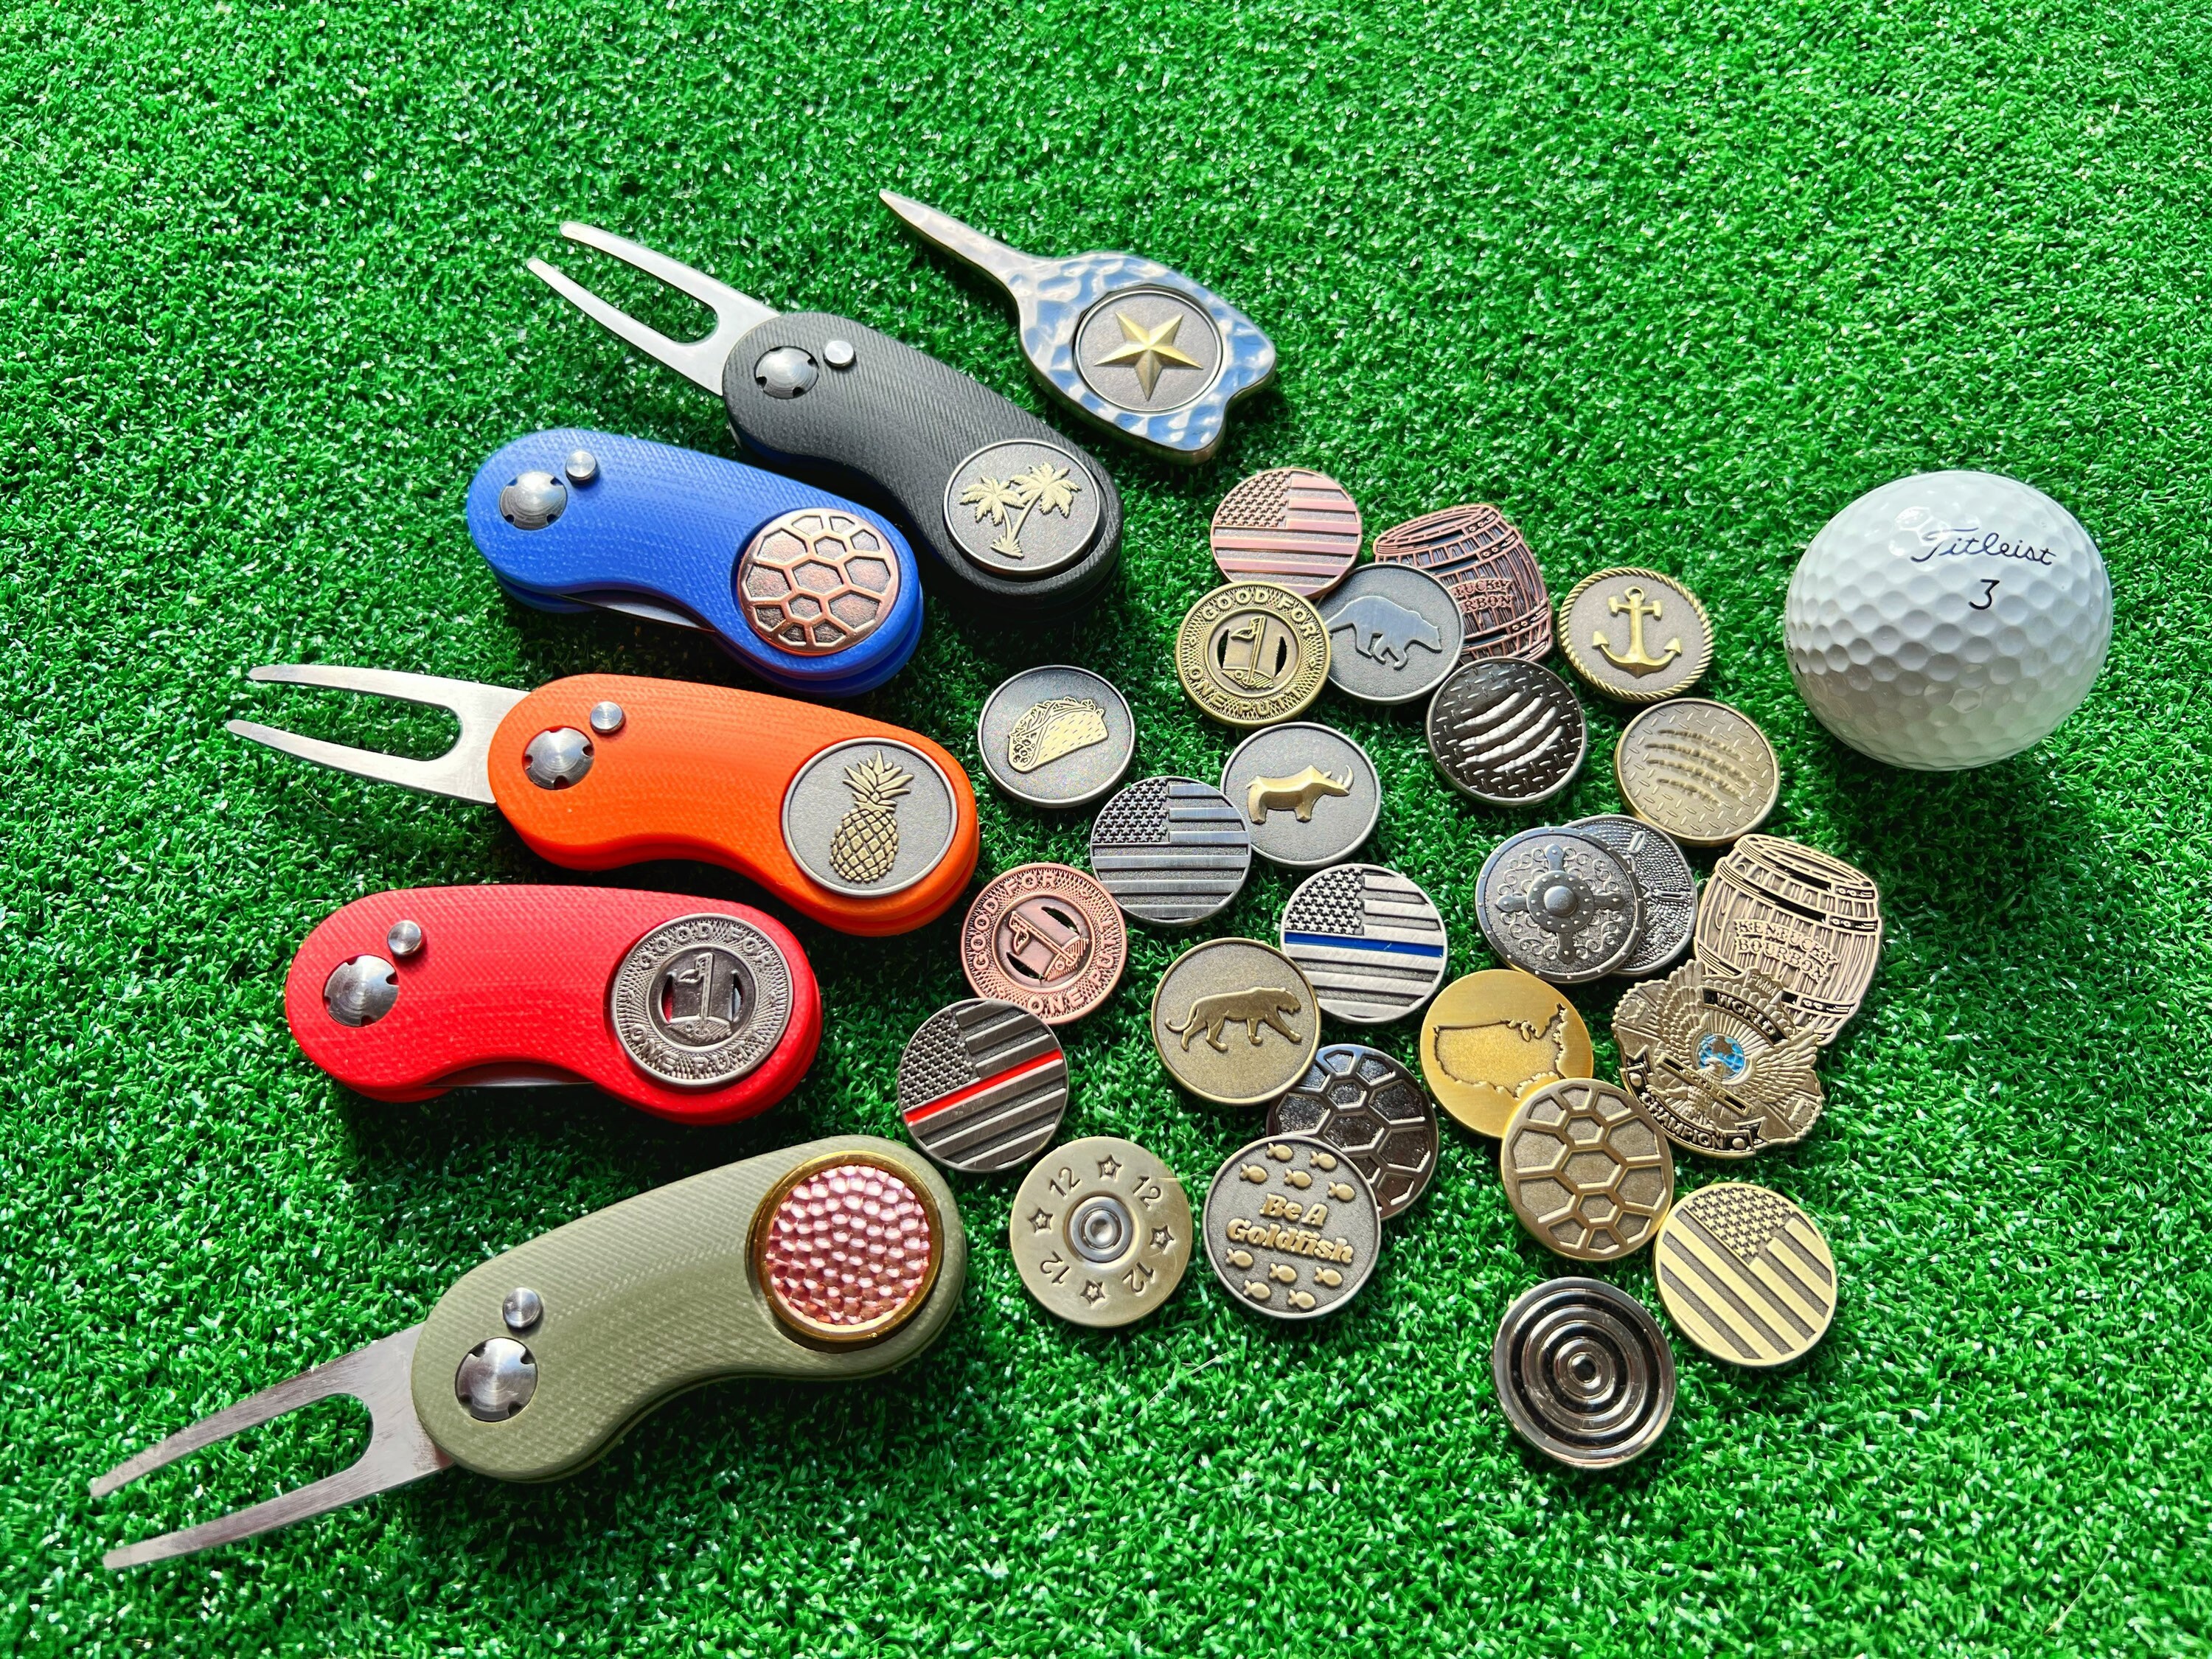 Peahefy Accessoire de golf, marqueur de balle magnétique, accessoire de golf  d'élément de réparation de divot en alliage de zinc élégant 